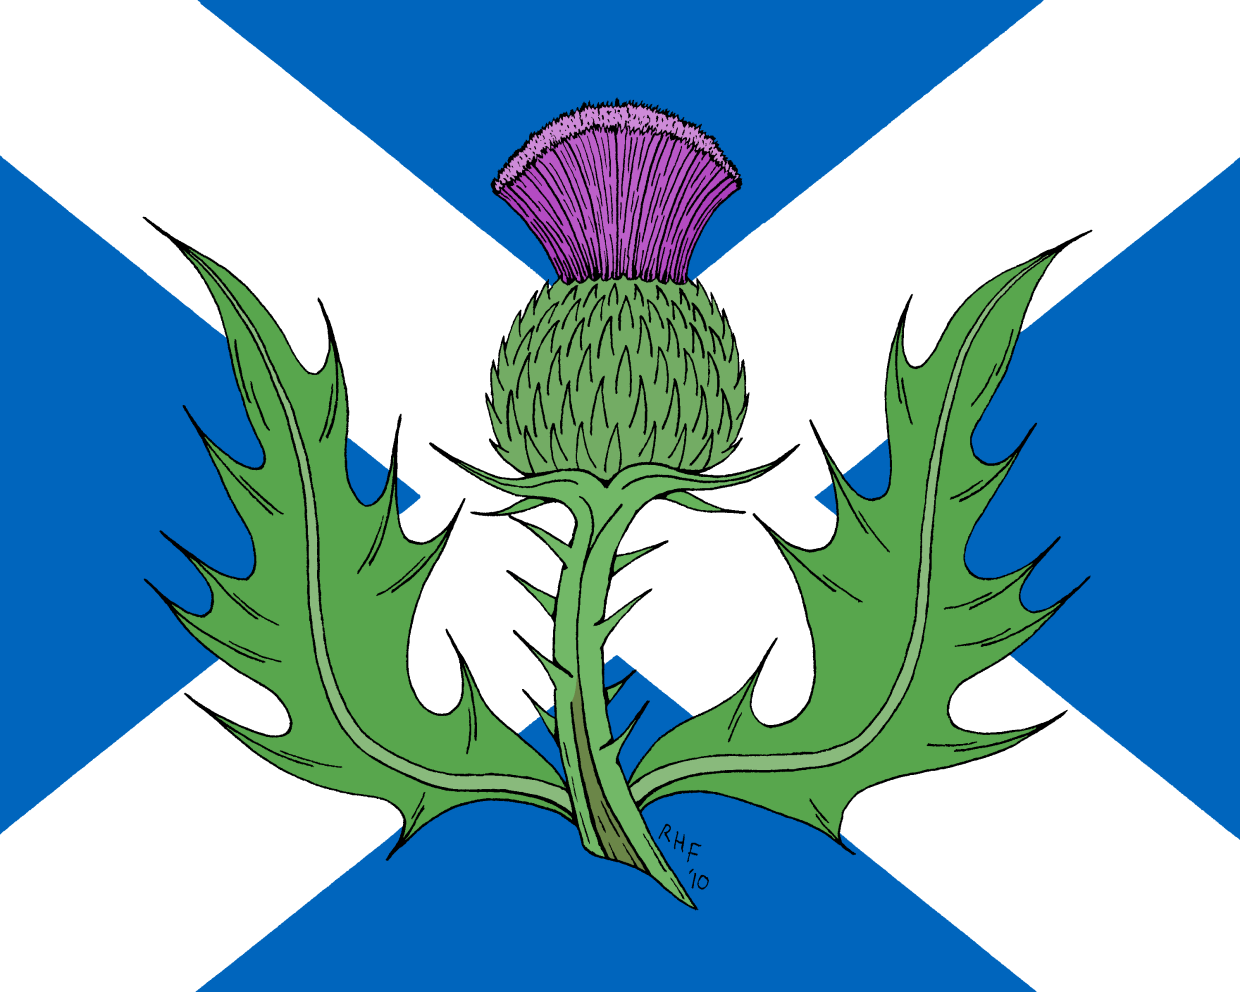 Цветок чертополоха символ Шотландии. Национальный символ Шотландии чертополох. Thistle символ Шотландии. Национальный цветок Шотландии чертополох.